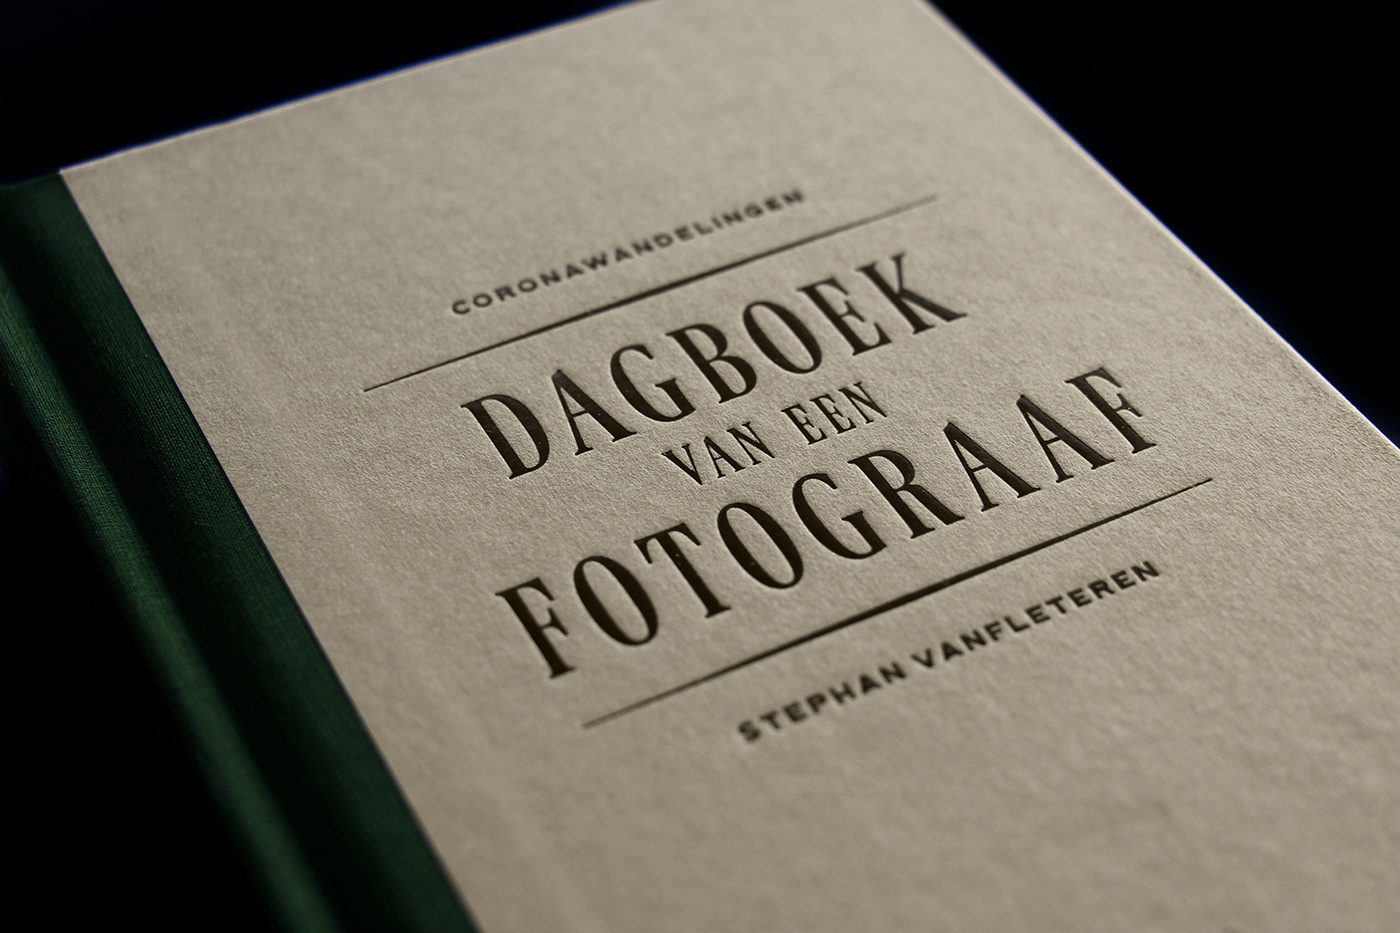 Bookdesign coverdesign de bezige bij green hardcover hotfoil Photography  stephan vanfleteren